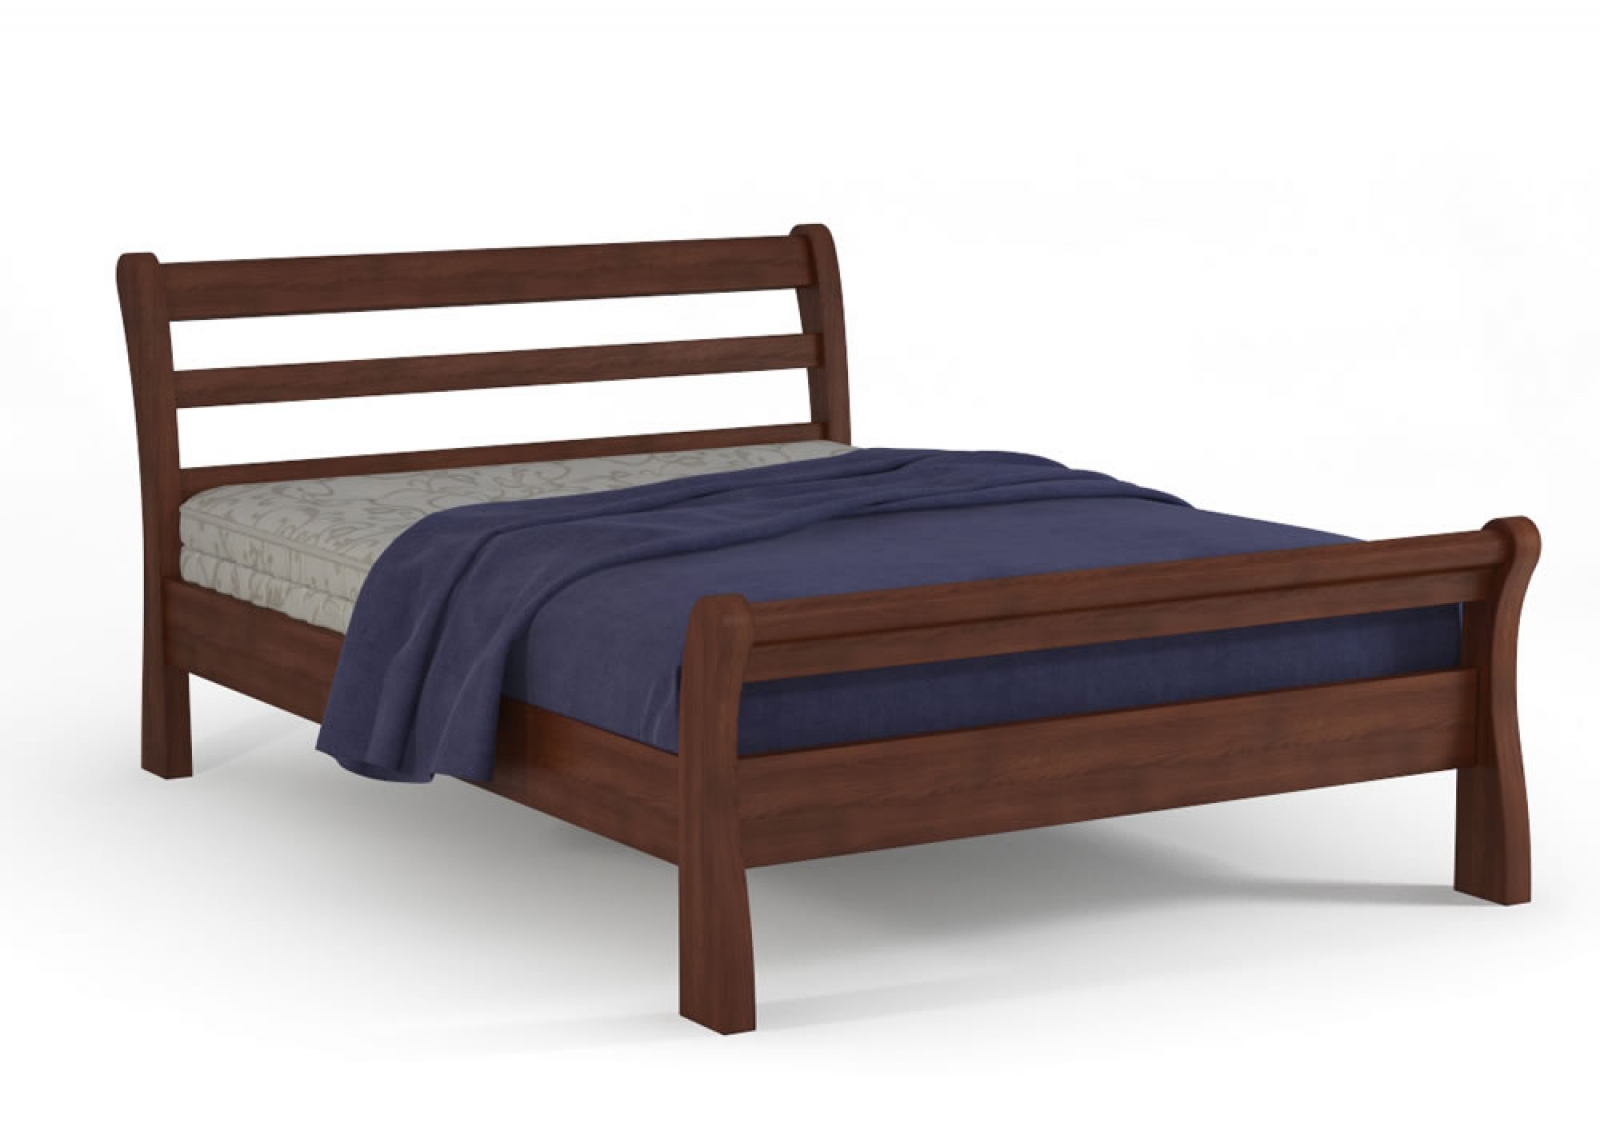 Купить деревянную кровать недорого. Кровать Dreamline Бельфор. Кровать Dreamline Парма (бук). Кровать Dreamline Лагуна бук.